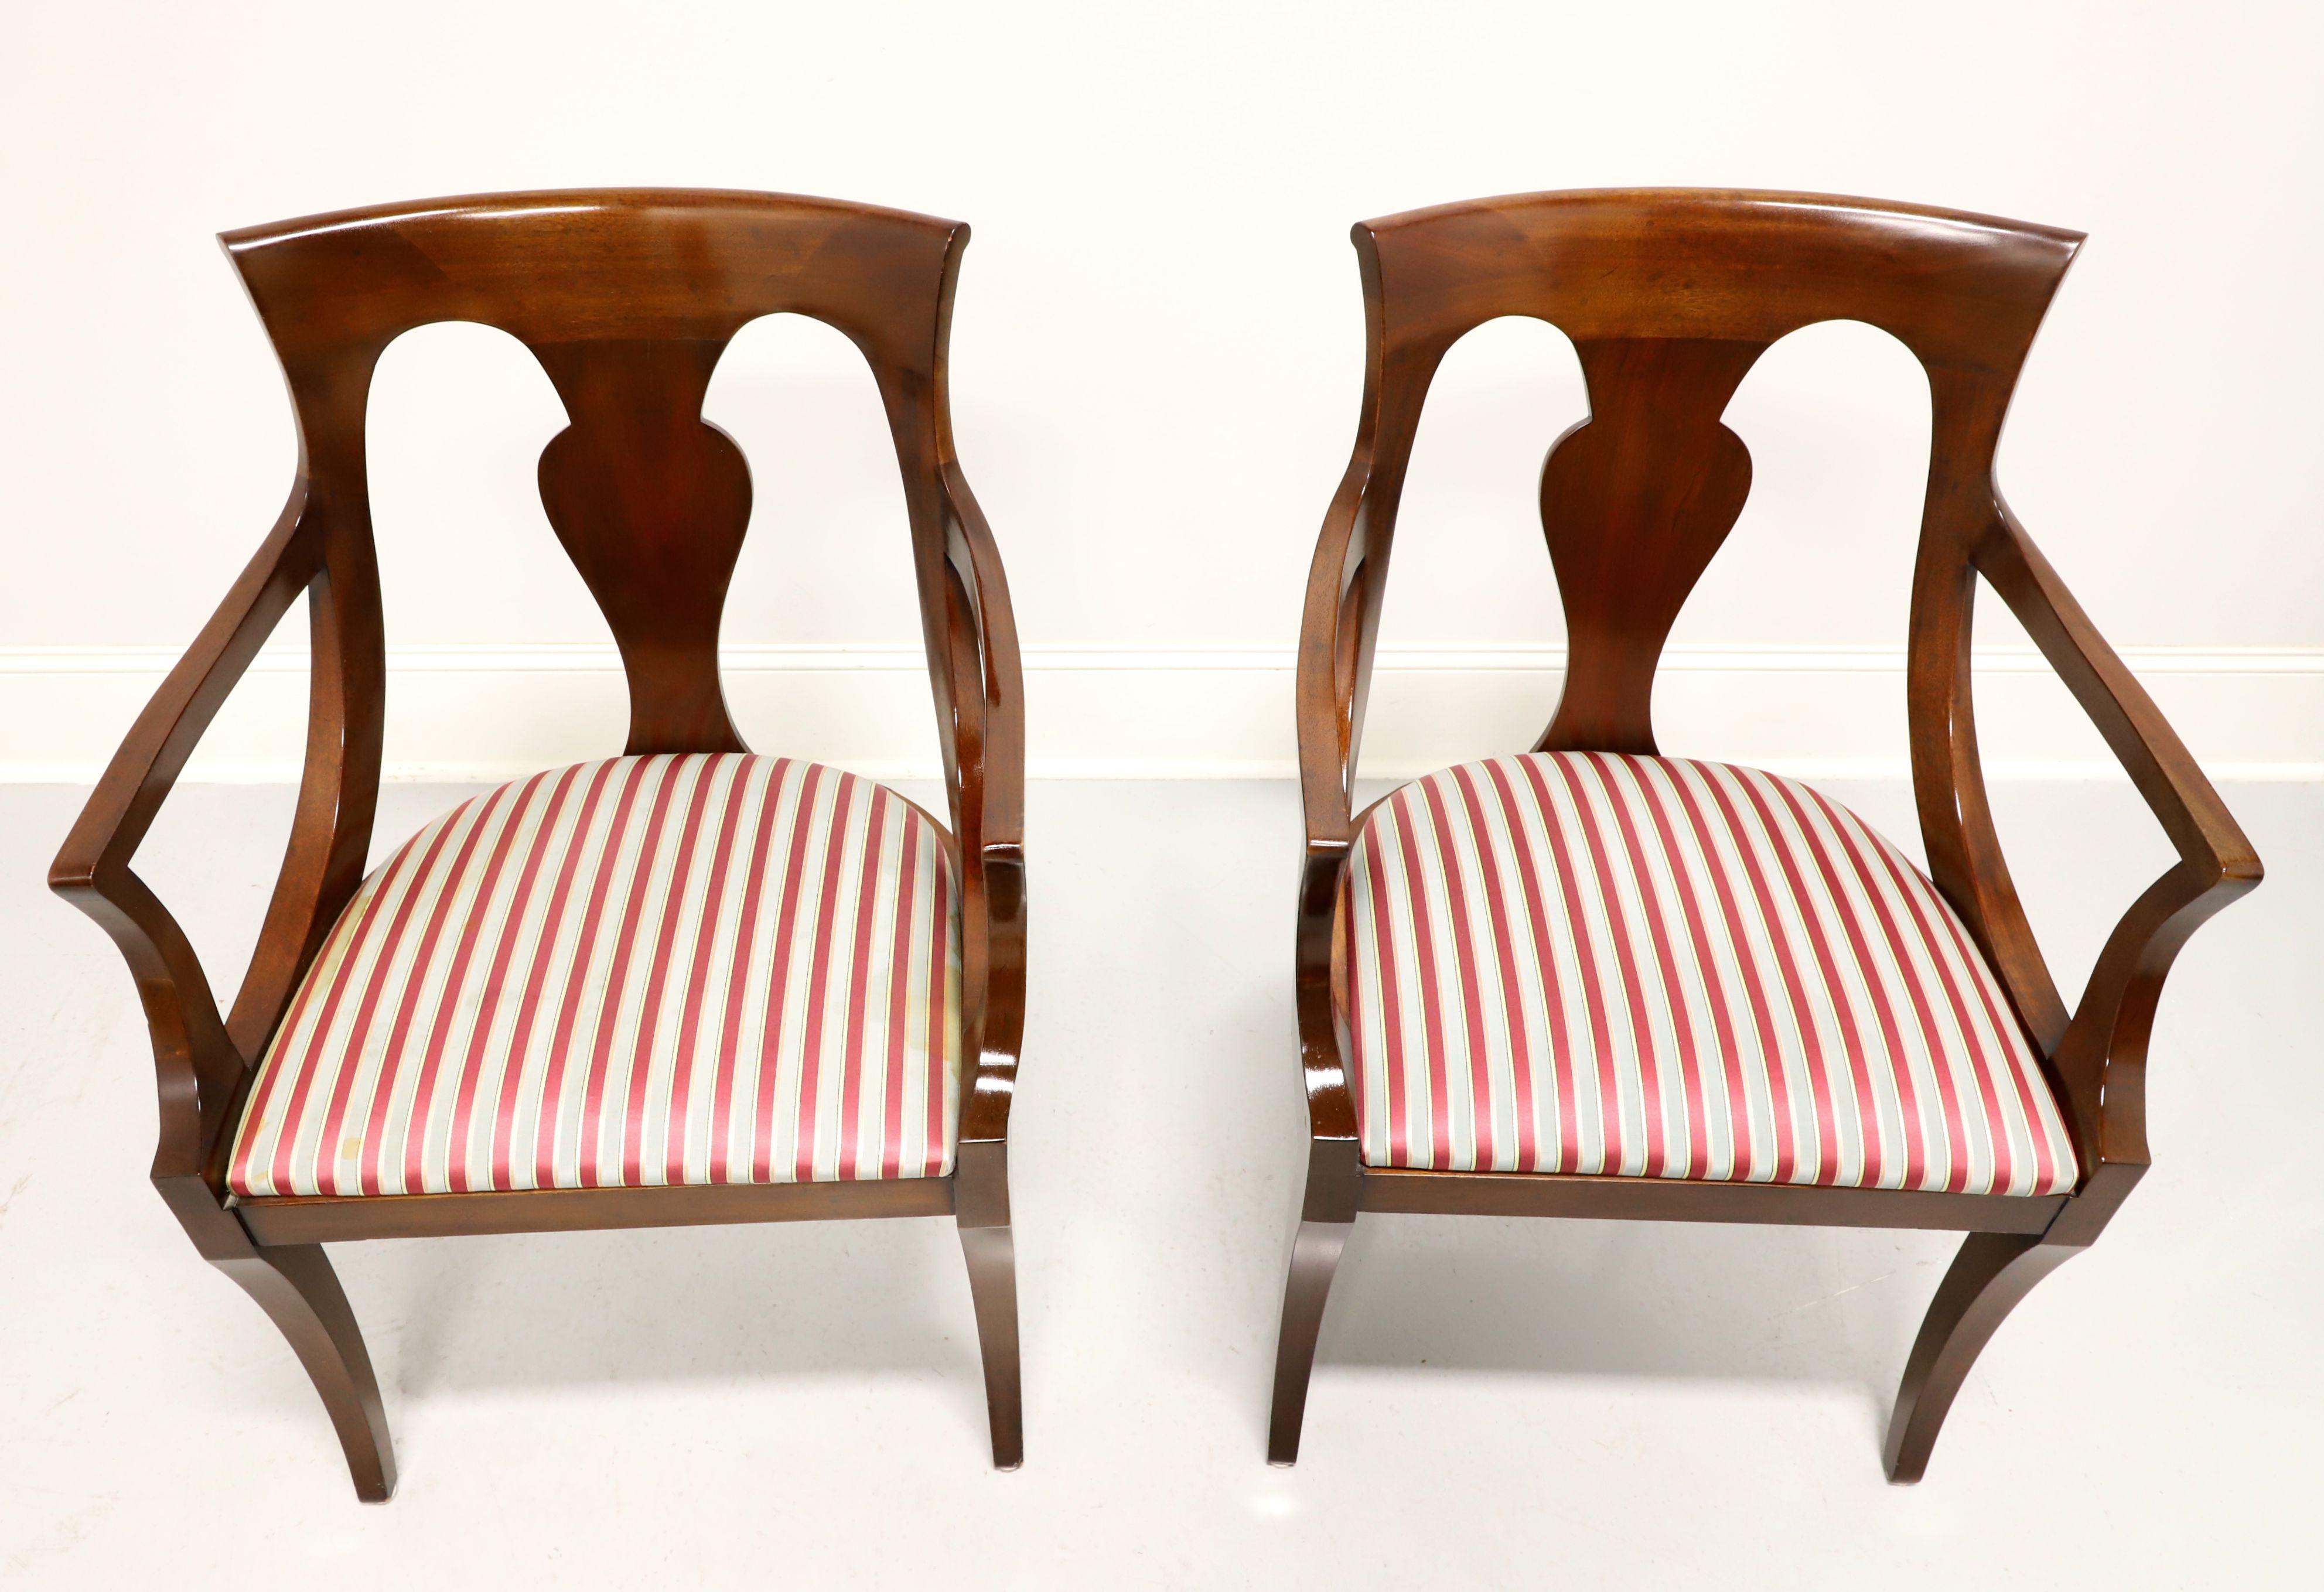 Paire de fauteuils de salle à manger de style Empire par Drexel Heritage. En acajou massif, avec une barre d'appui sculptée, un dossier sculpté, des accoudoirs incurvés, une assise tapissée d'un tissu à rayures rouges et argentées et des pieds